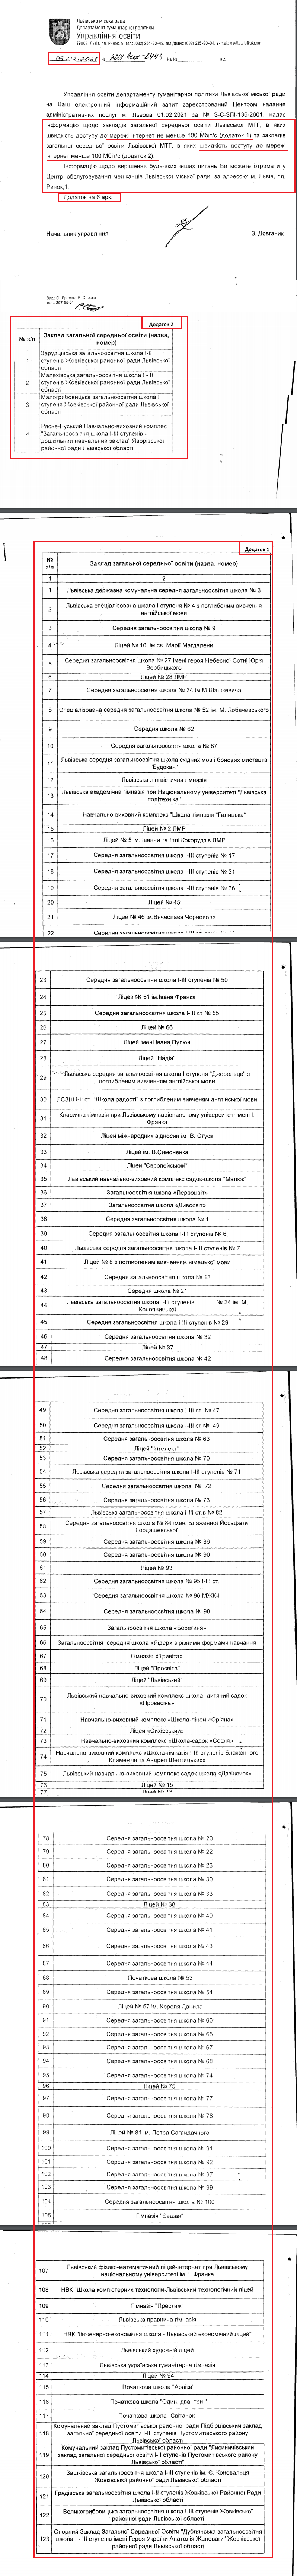 Лист Львівської міської ради від 5 лютого 2021 року з додатками